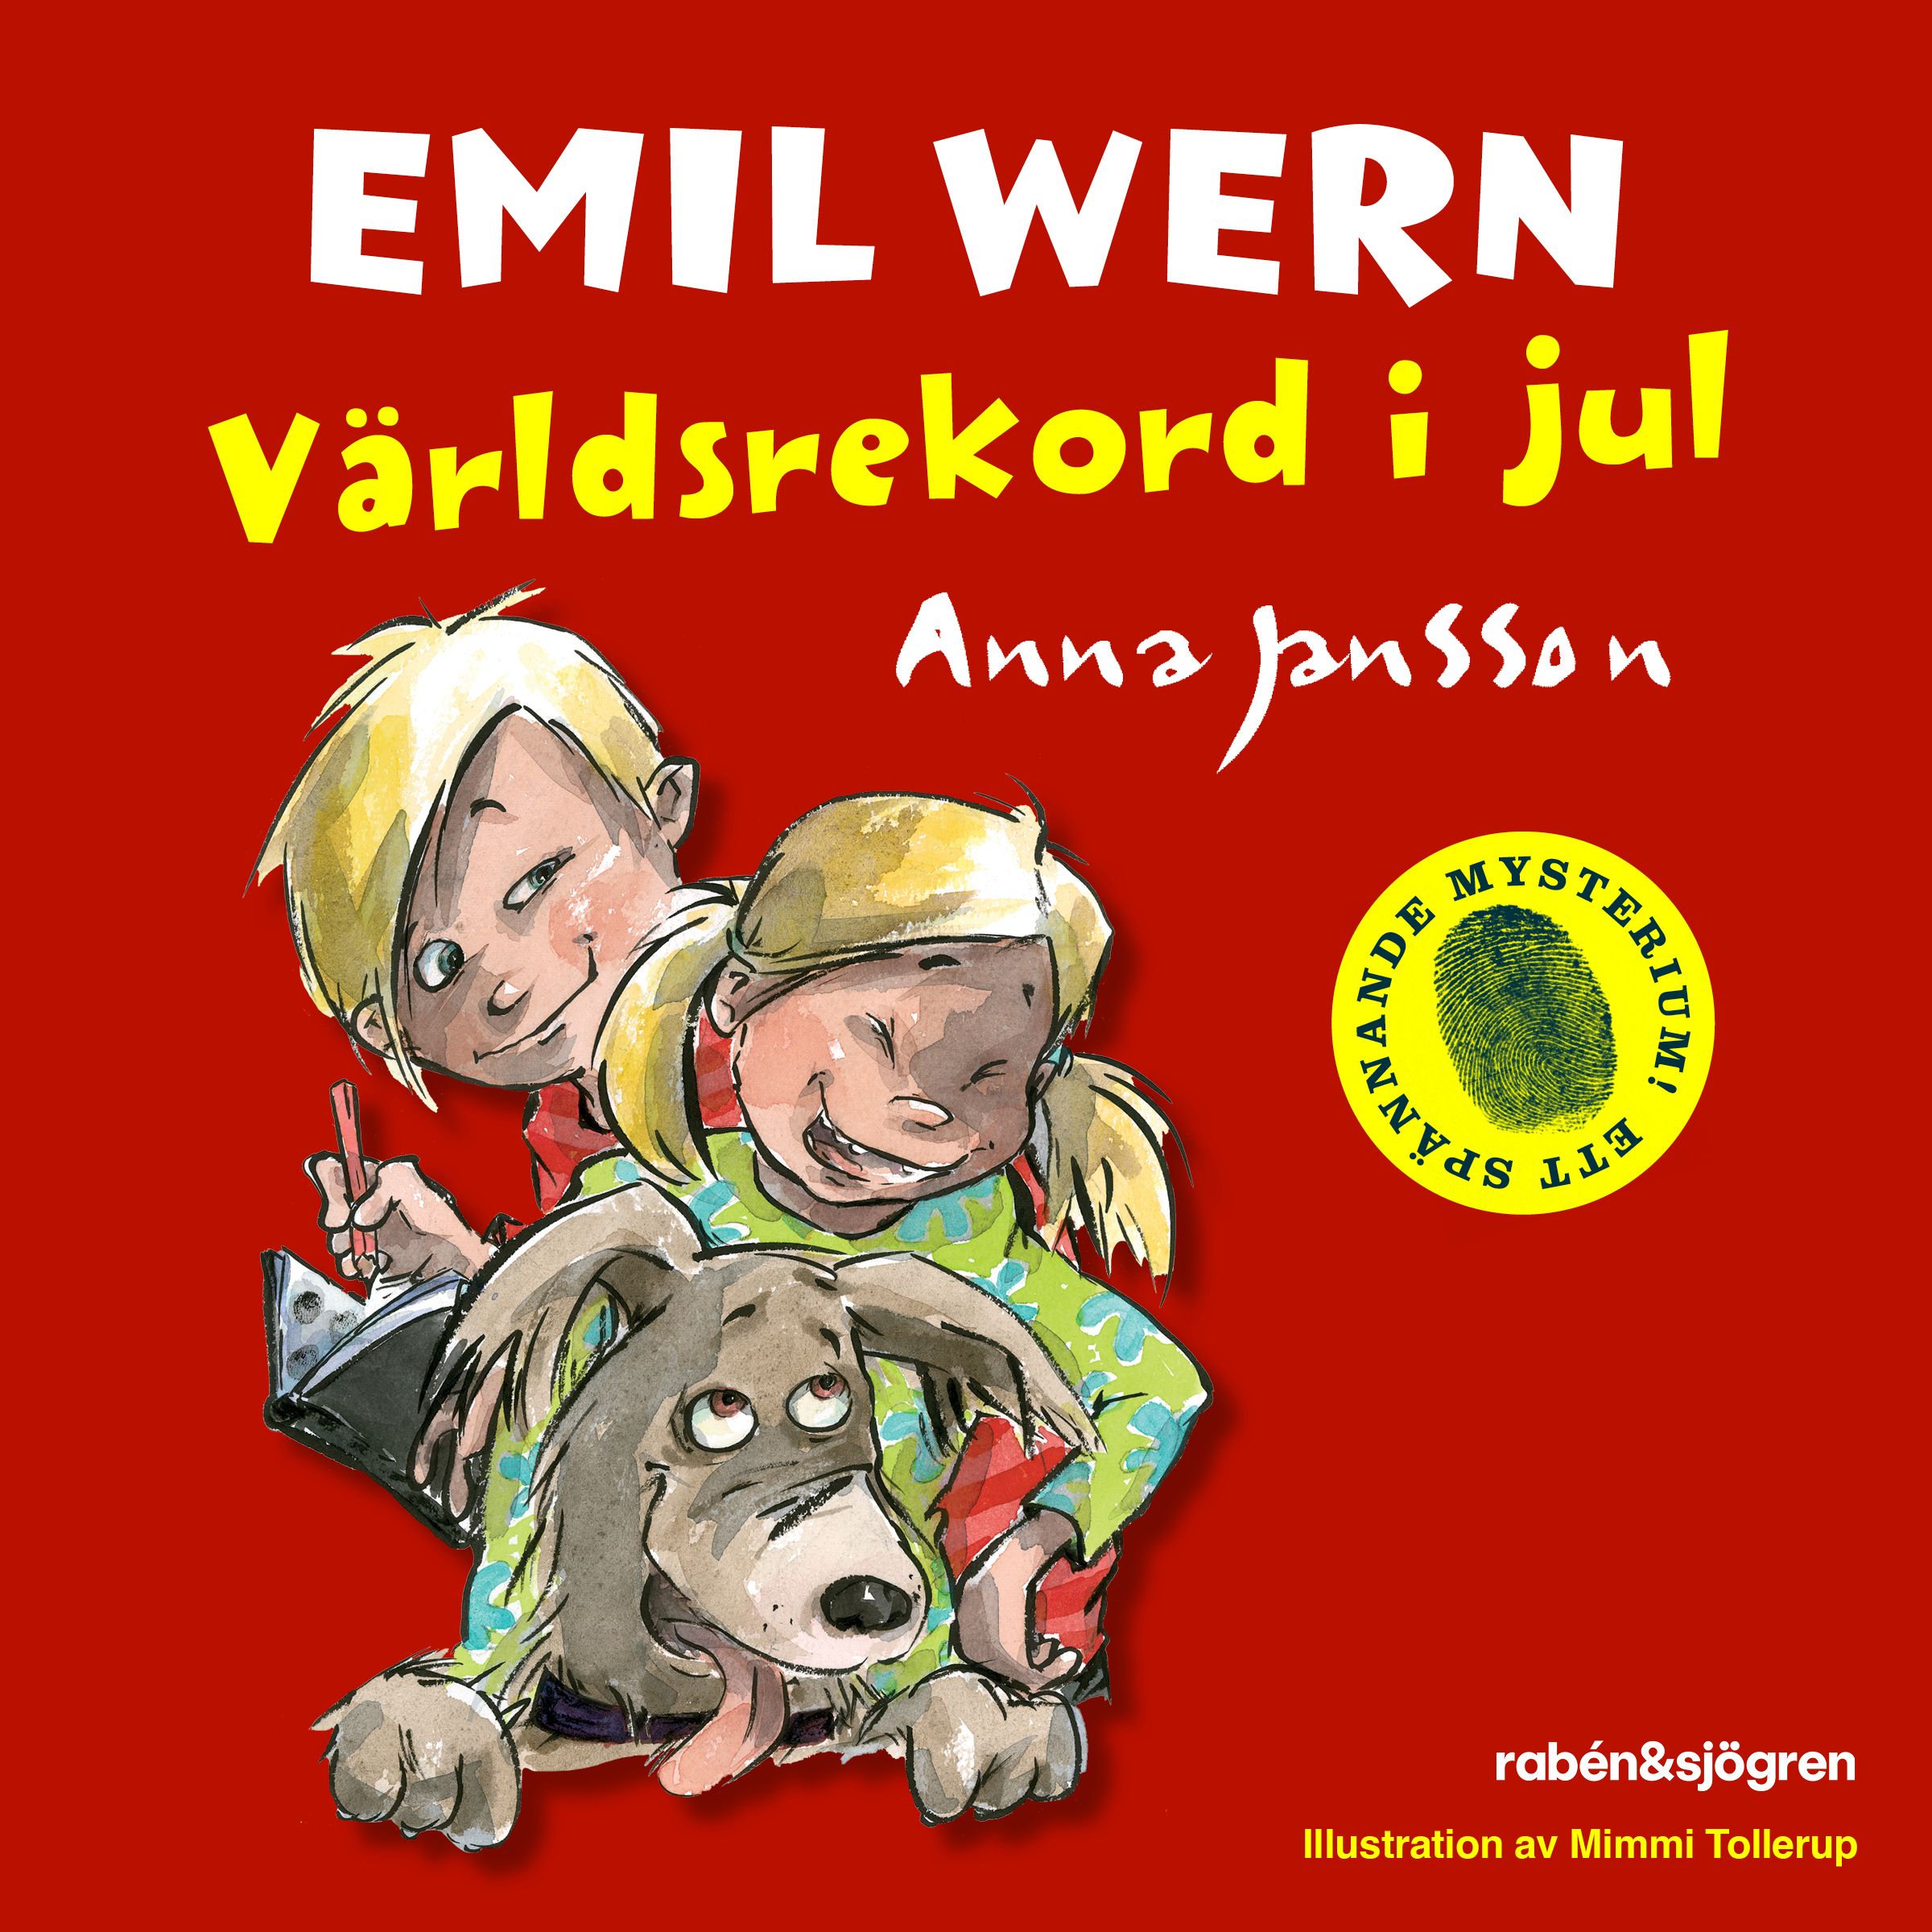 Emil Wern 20 – Världsrekord i jul, audiobook by Anna Jansson